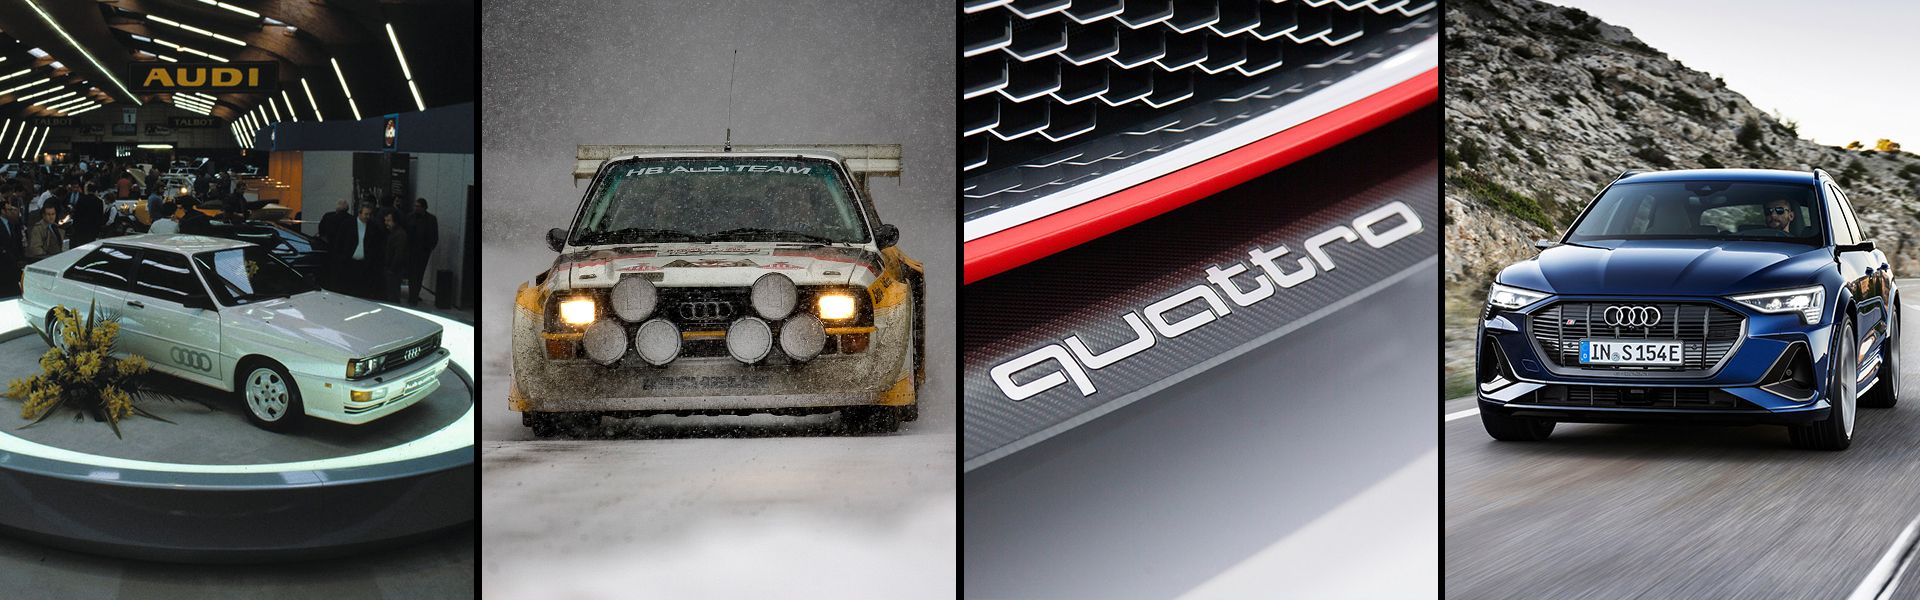 Äußerliche Veränderung des Audi quattro im Laufe der Jahre